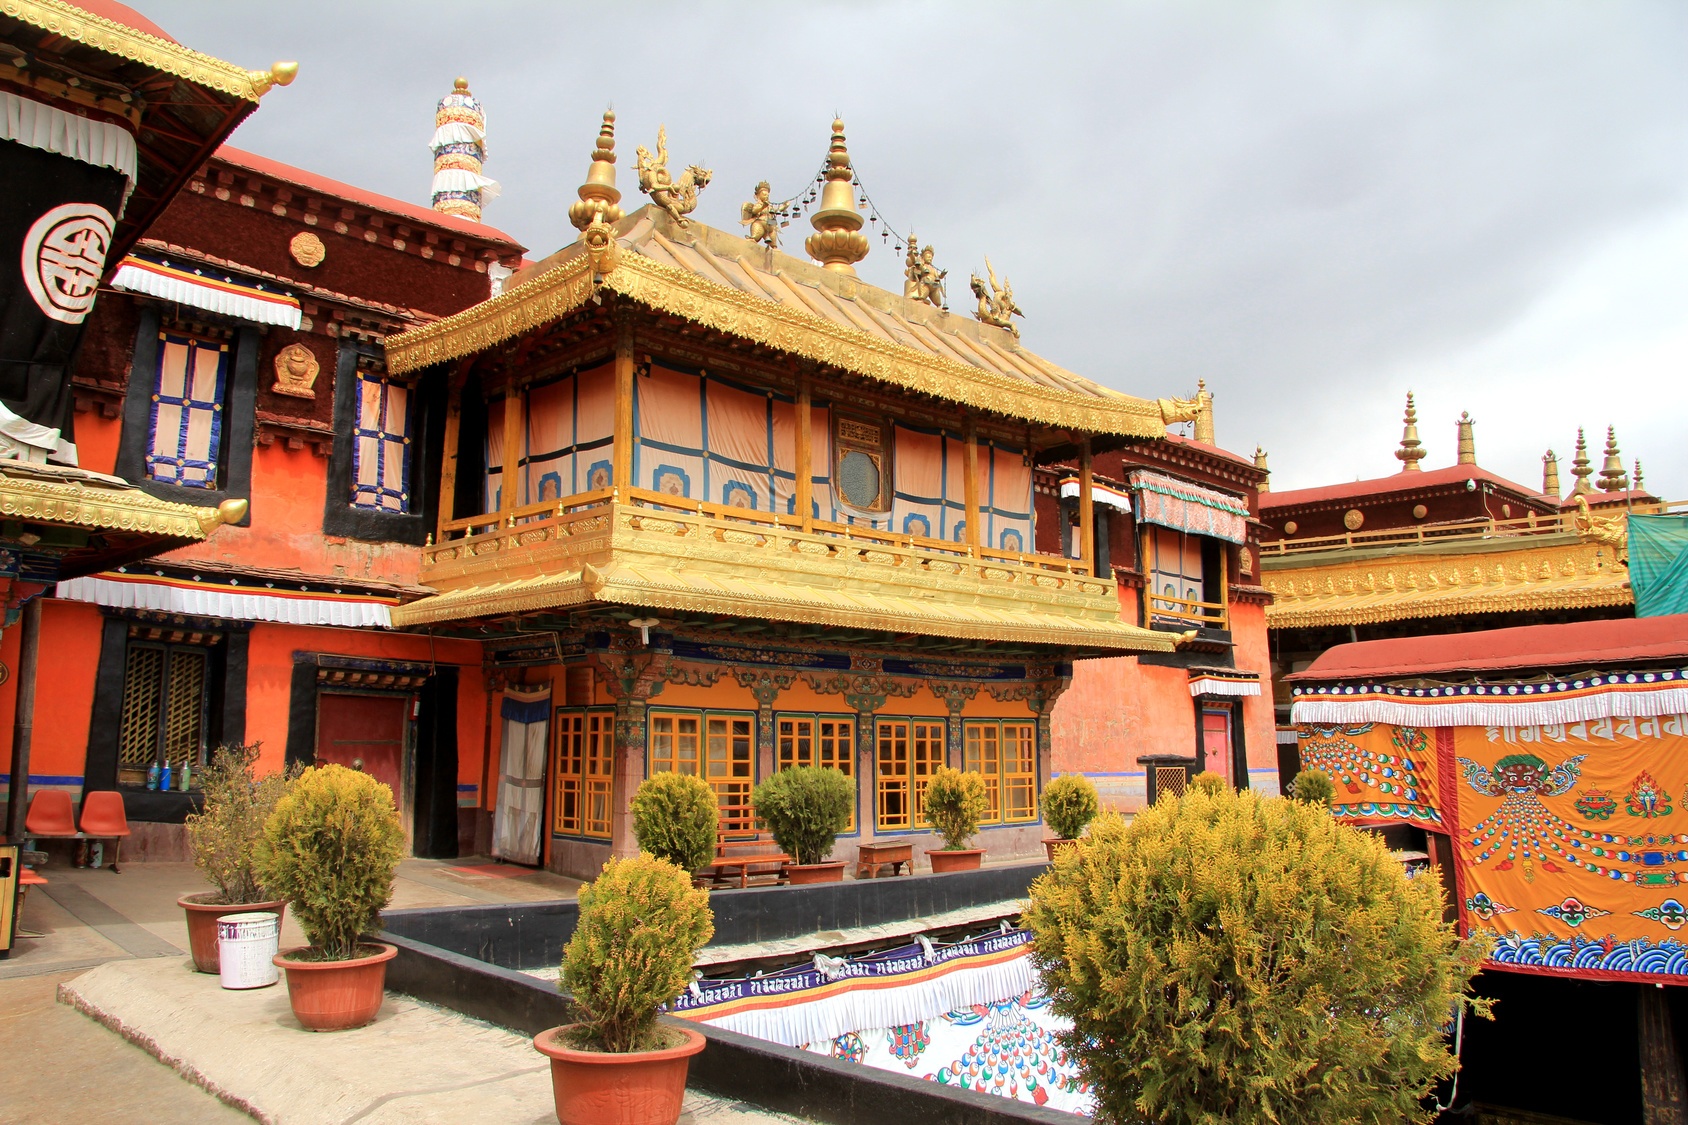 Lhasa Biuro podróży Goforworld by Kuźniar